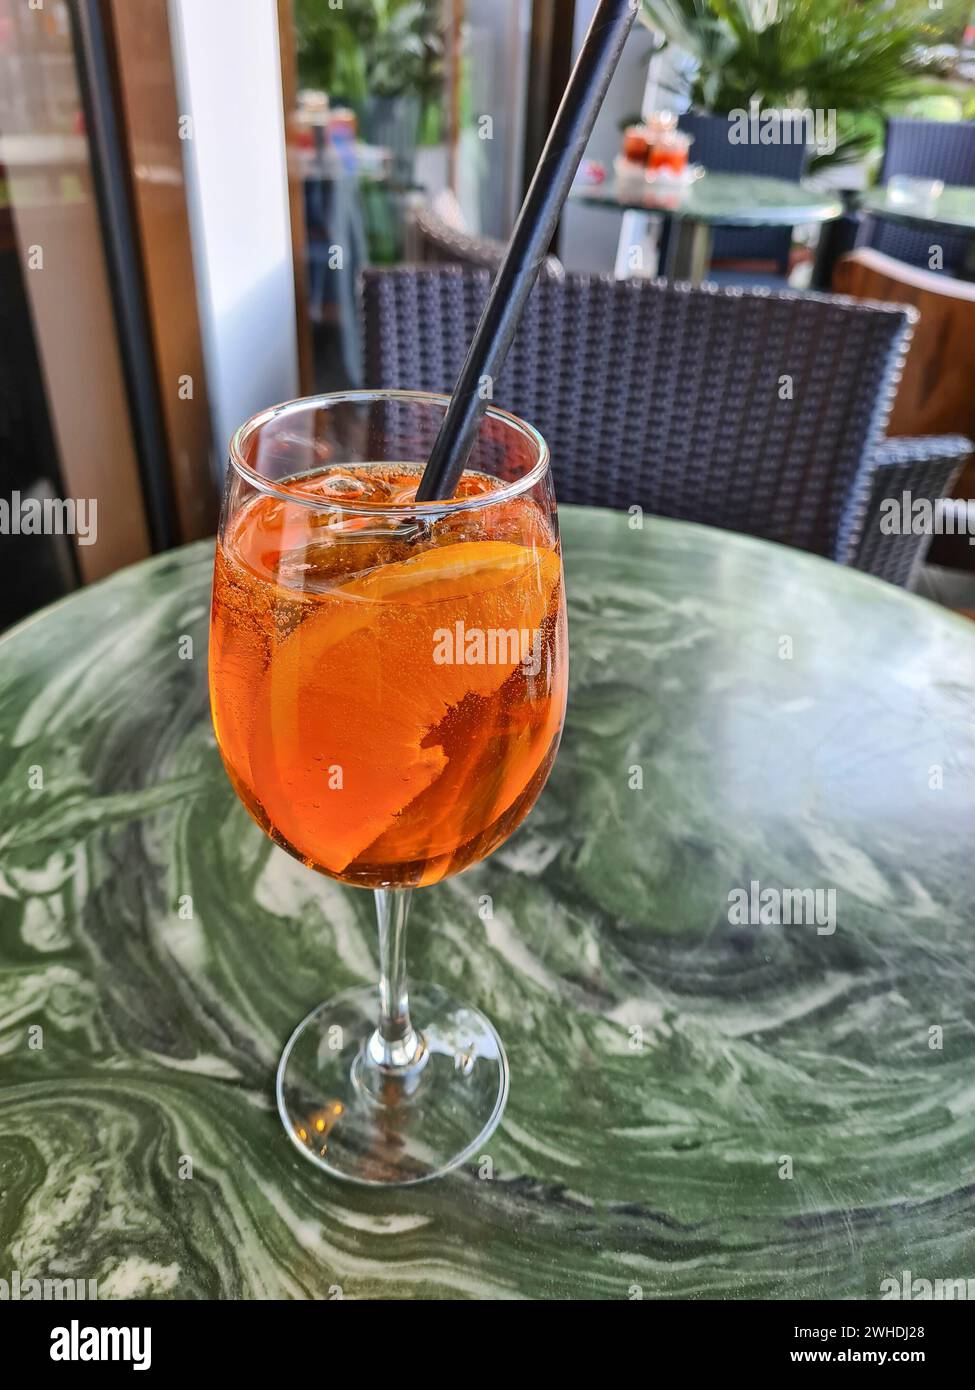 La bibita alcolica Aperol Spritz con una fetta d'arancia nel bicchiere e una paglia nera si erge da sola su un tavolo fuori dal ristorante Foto Stock